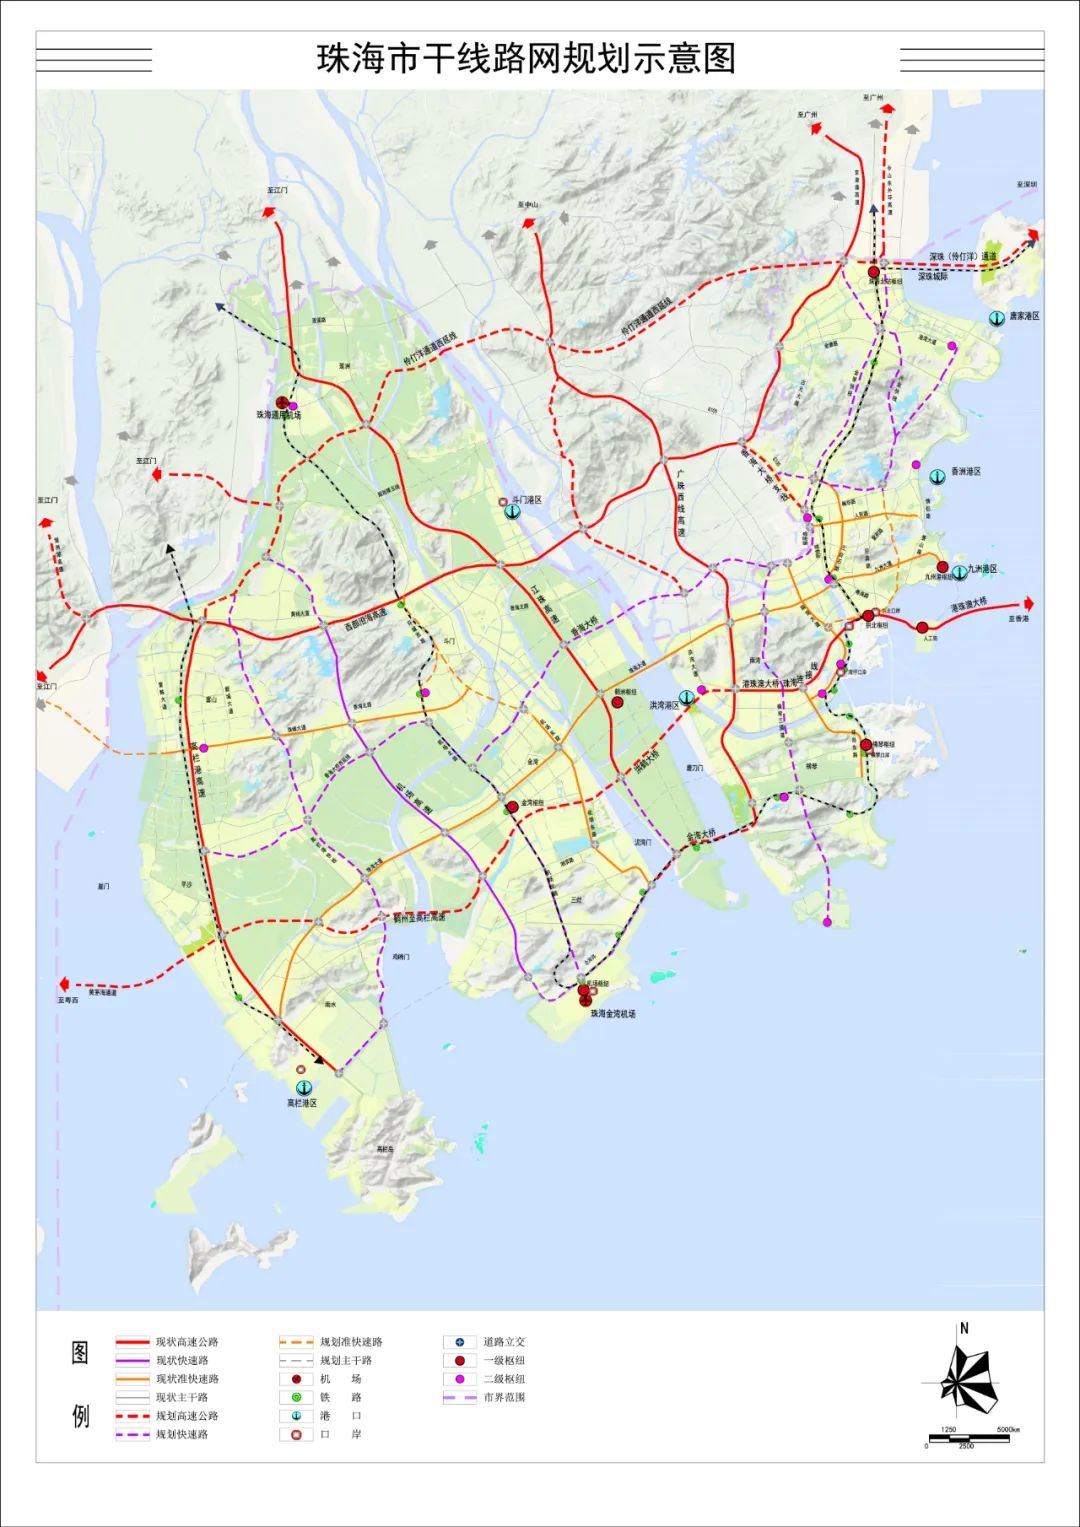 2018年12月25日,珠海市政府批复的《珠海市干线路网规划》